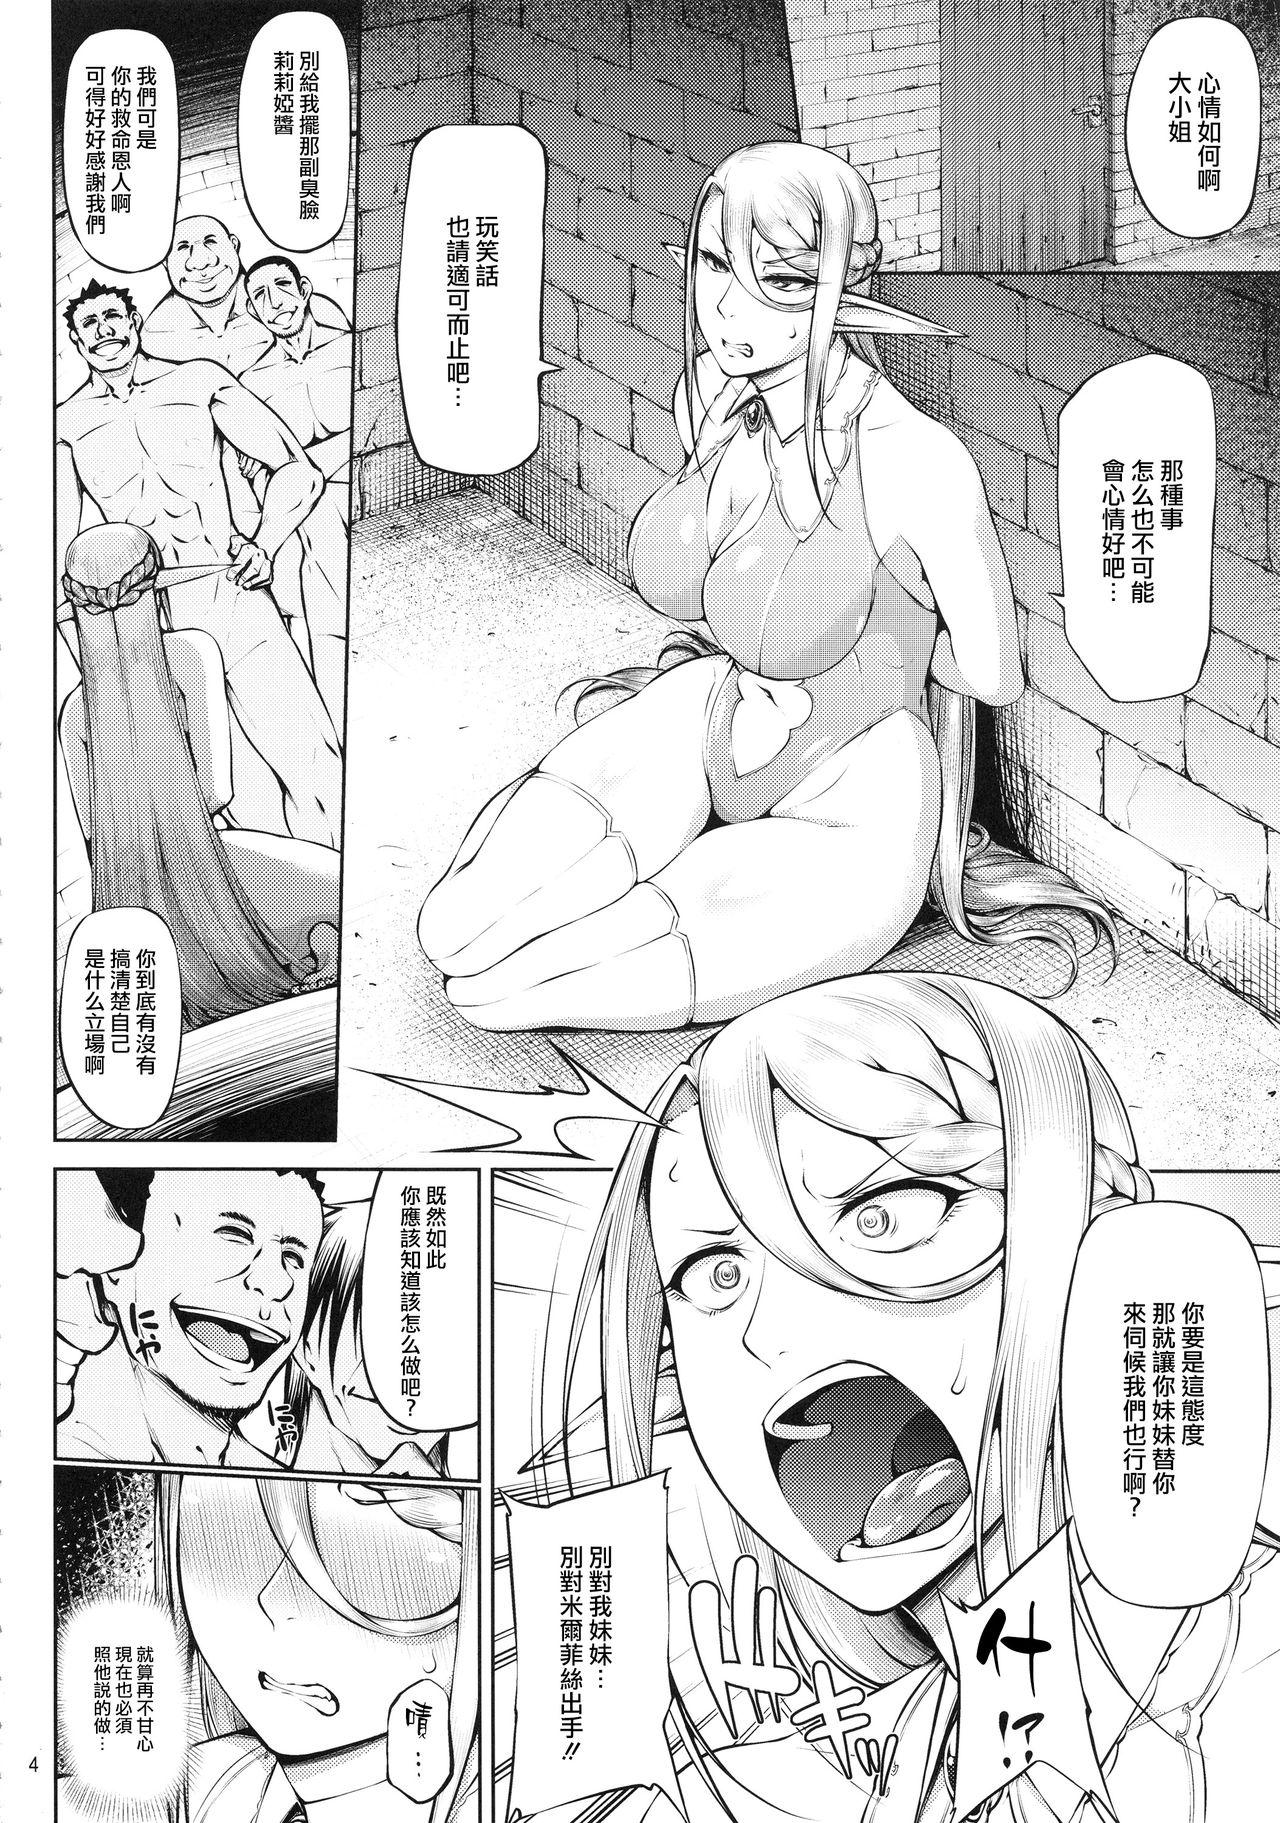 Blowing Kago no Naka no Tori Daiisshuu - Original Shaking - Page 5